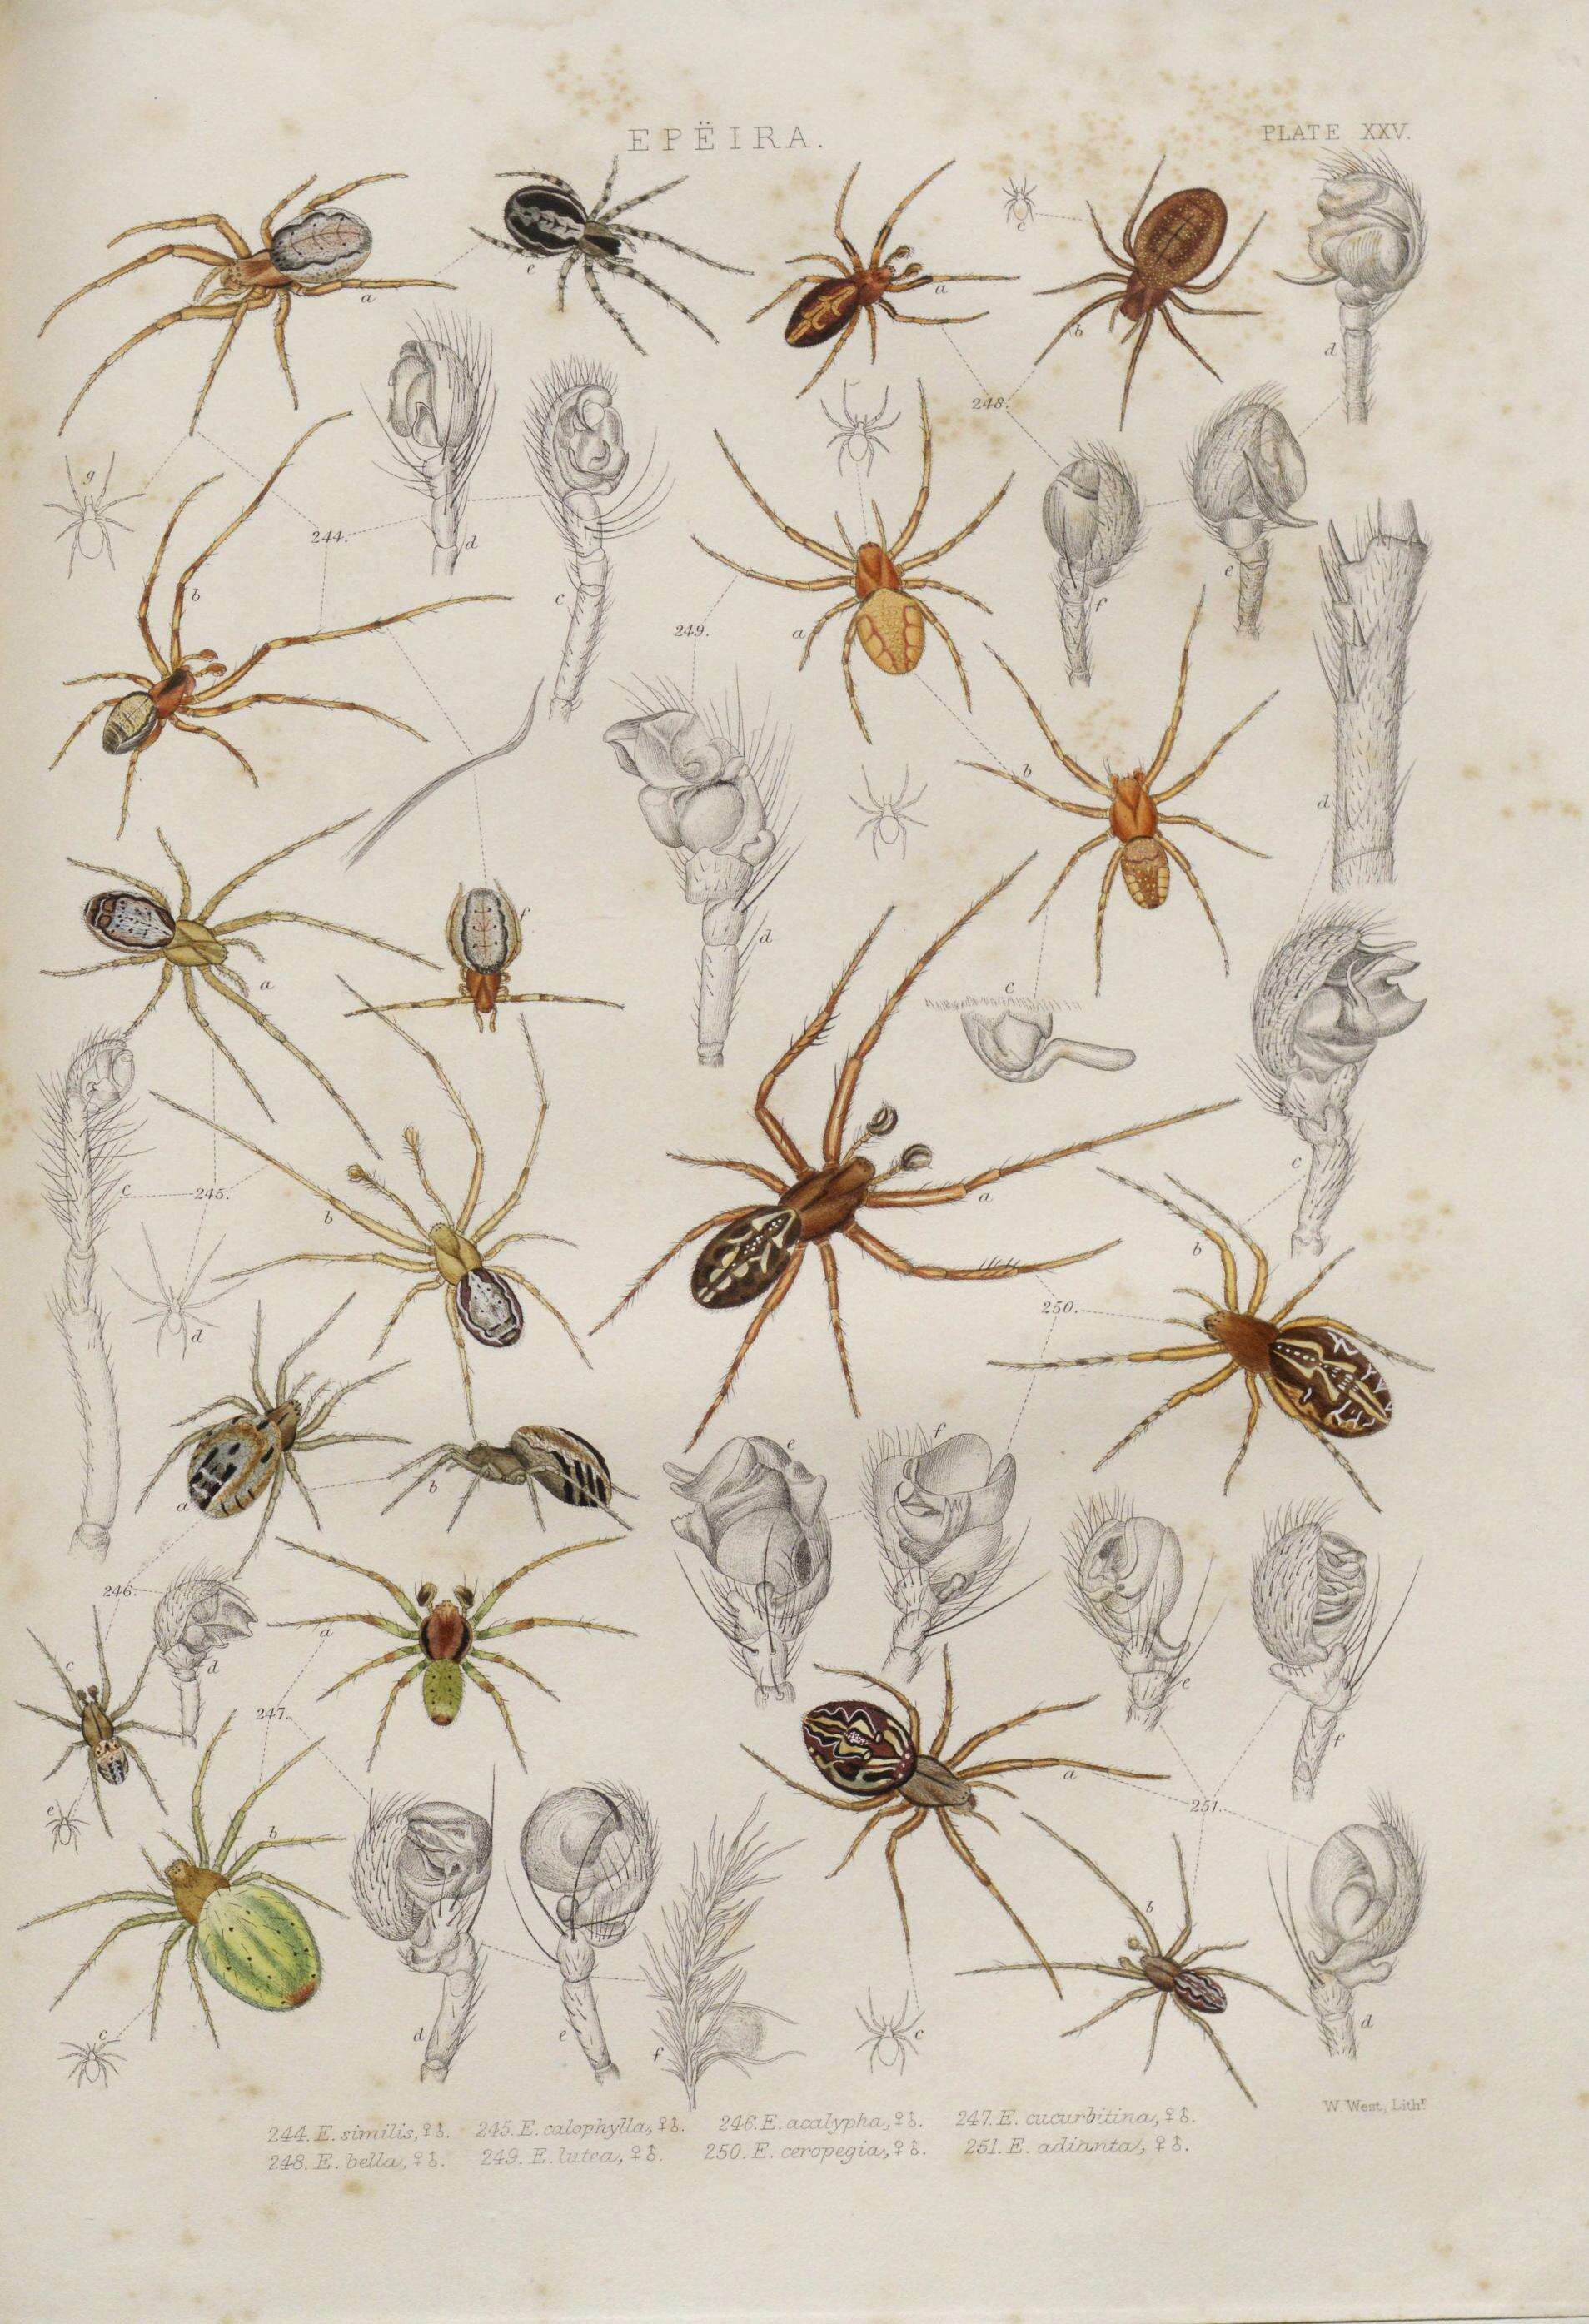 Image of Aculepeira ceropegia (Walckenaer 1802)